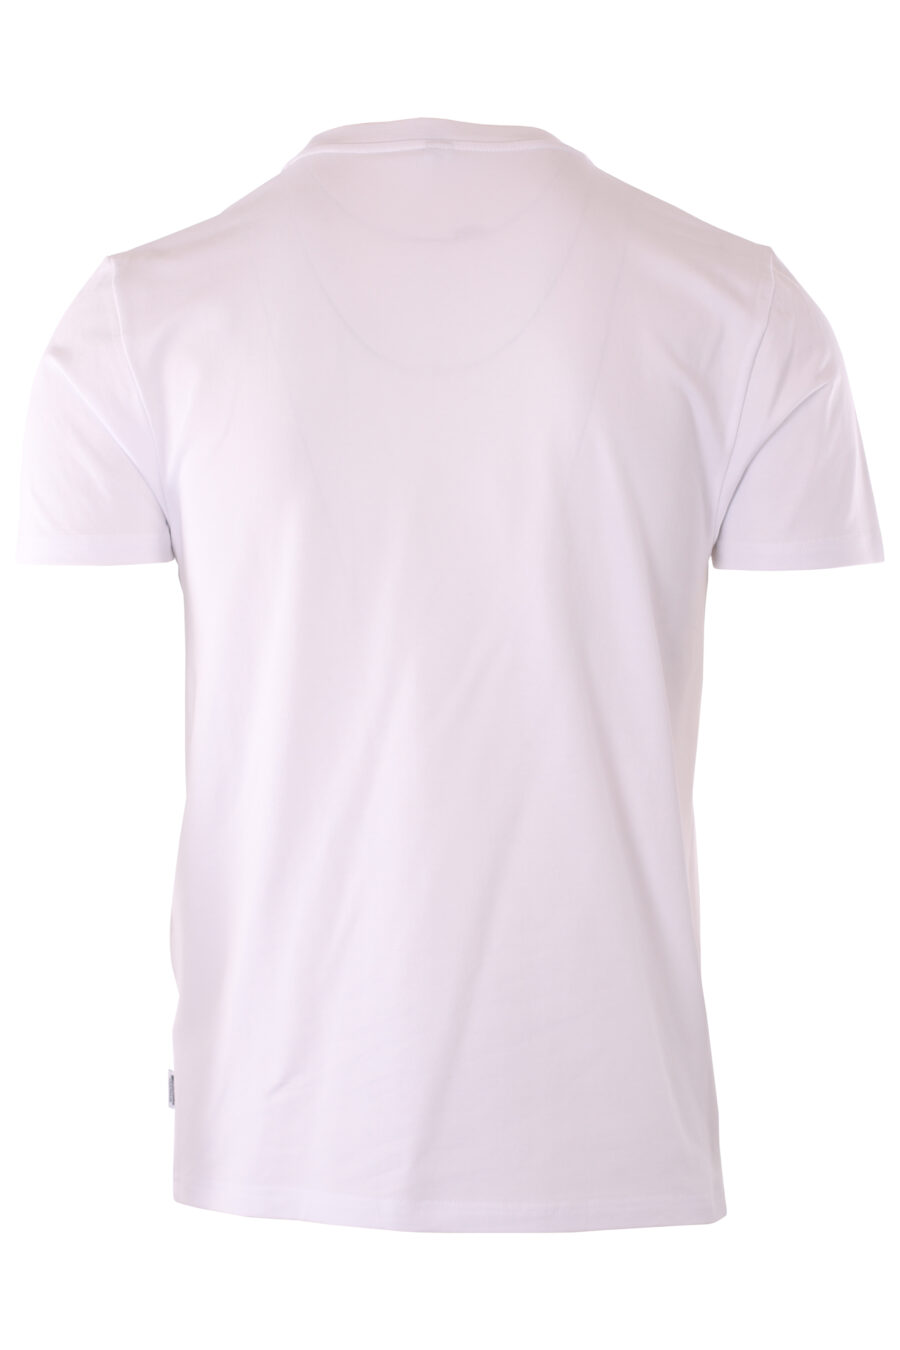 Camiseta blanca con logo oso pequeño "underbear" - IMG 6608